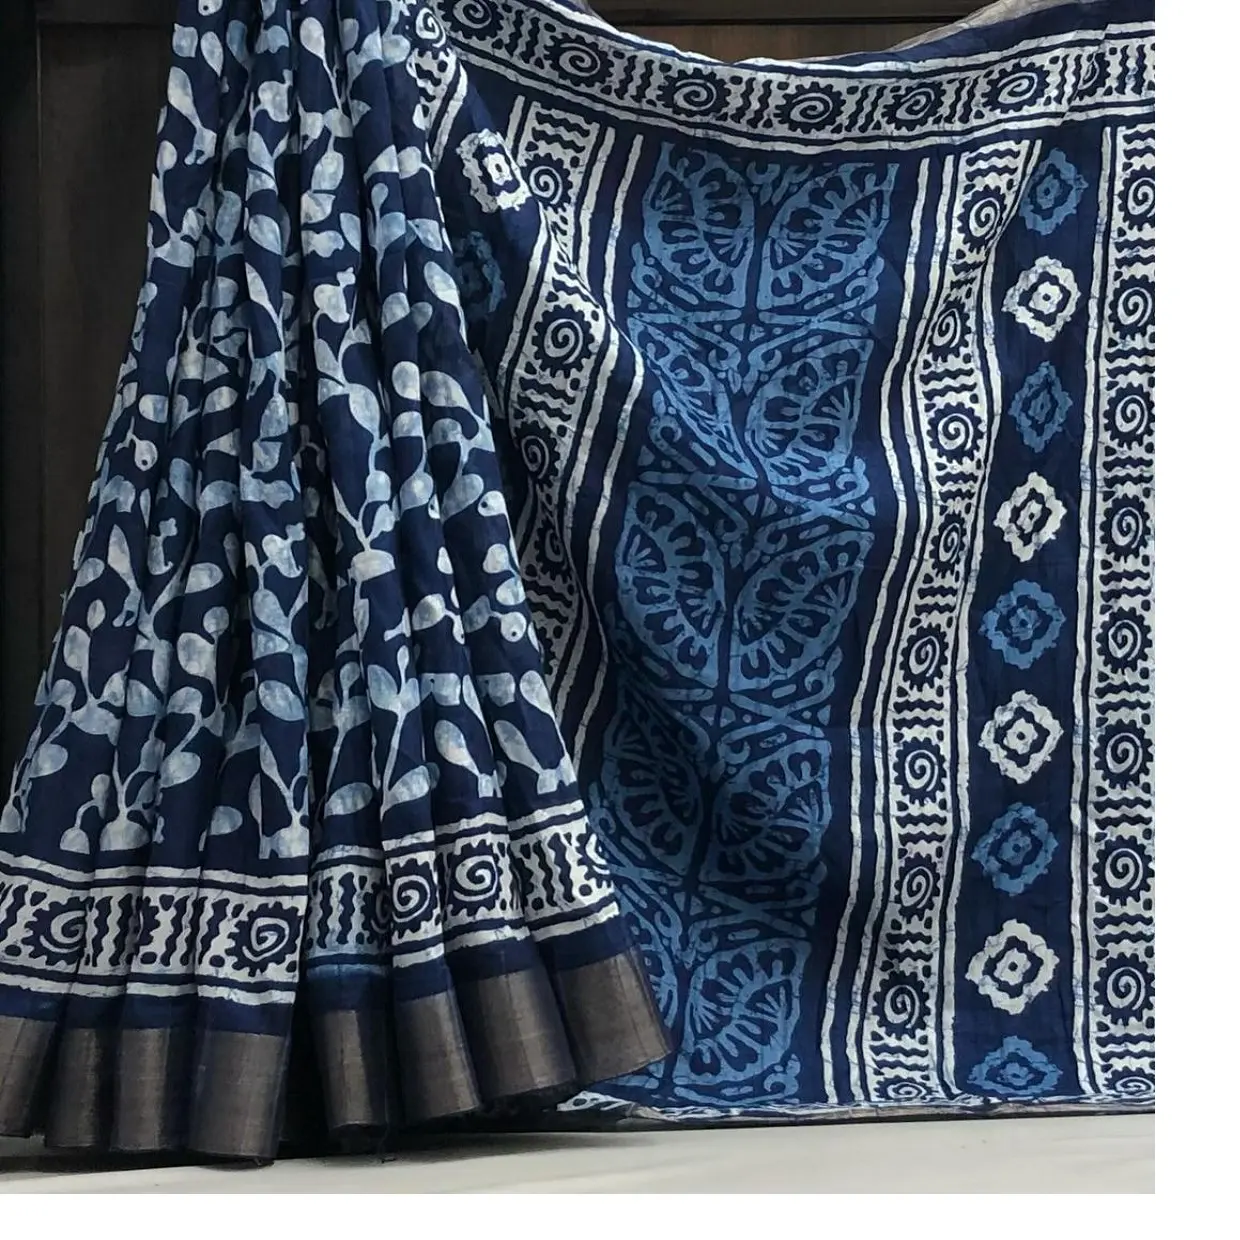 Por encargo en diseño abstracto suave telar manual índigo impreso saris con zari Patti borde incluyendo blusa en diseño floral.